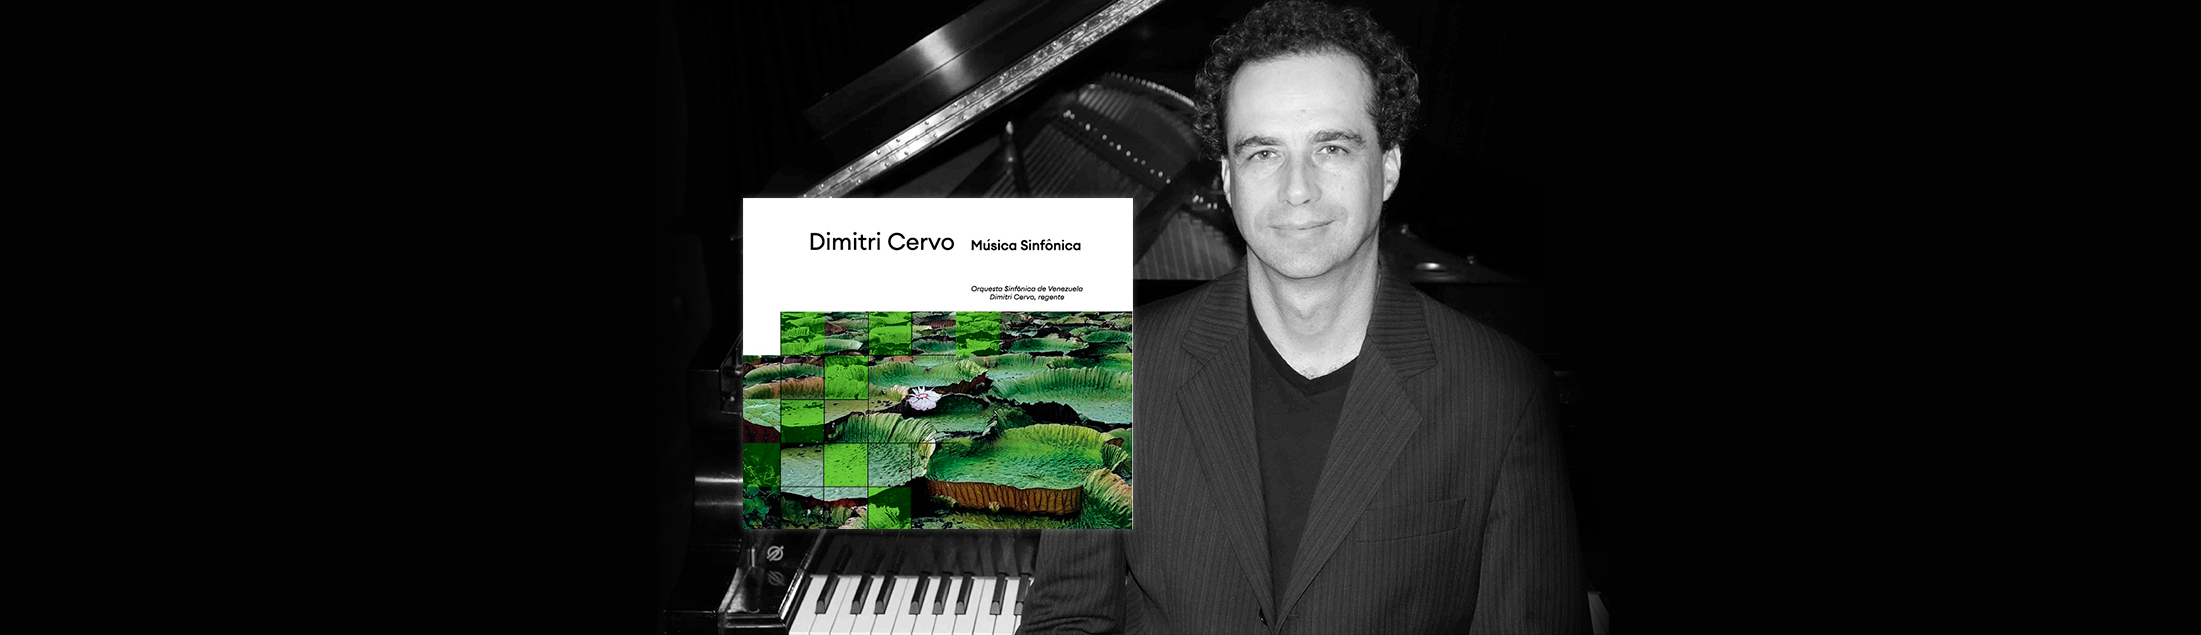 Dimitri Cervo lança o seu segundo CD autoral com a Orquestra Sinfônica da Venezuela